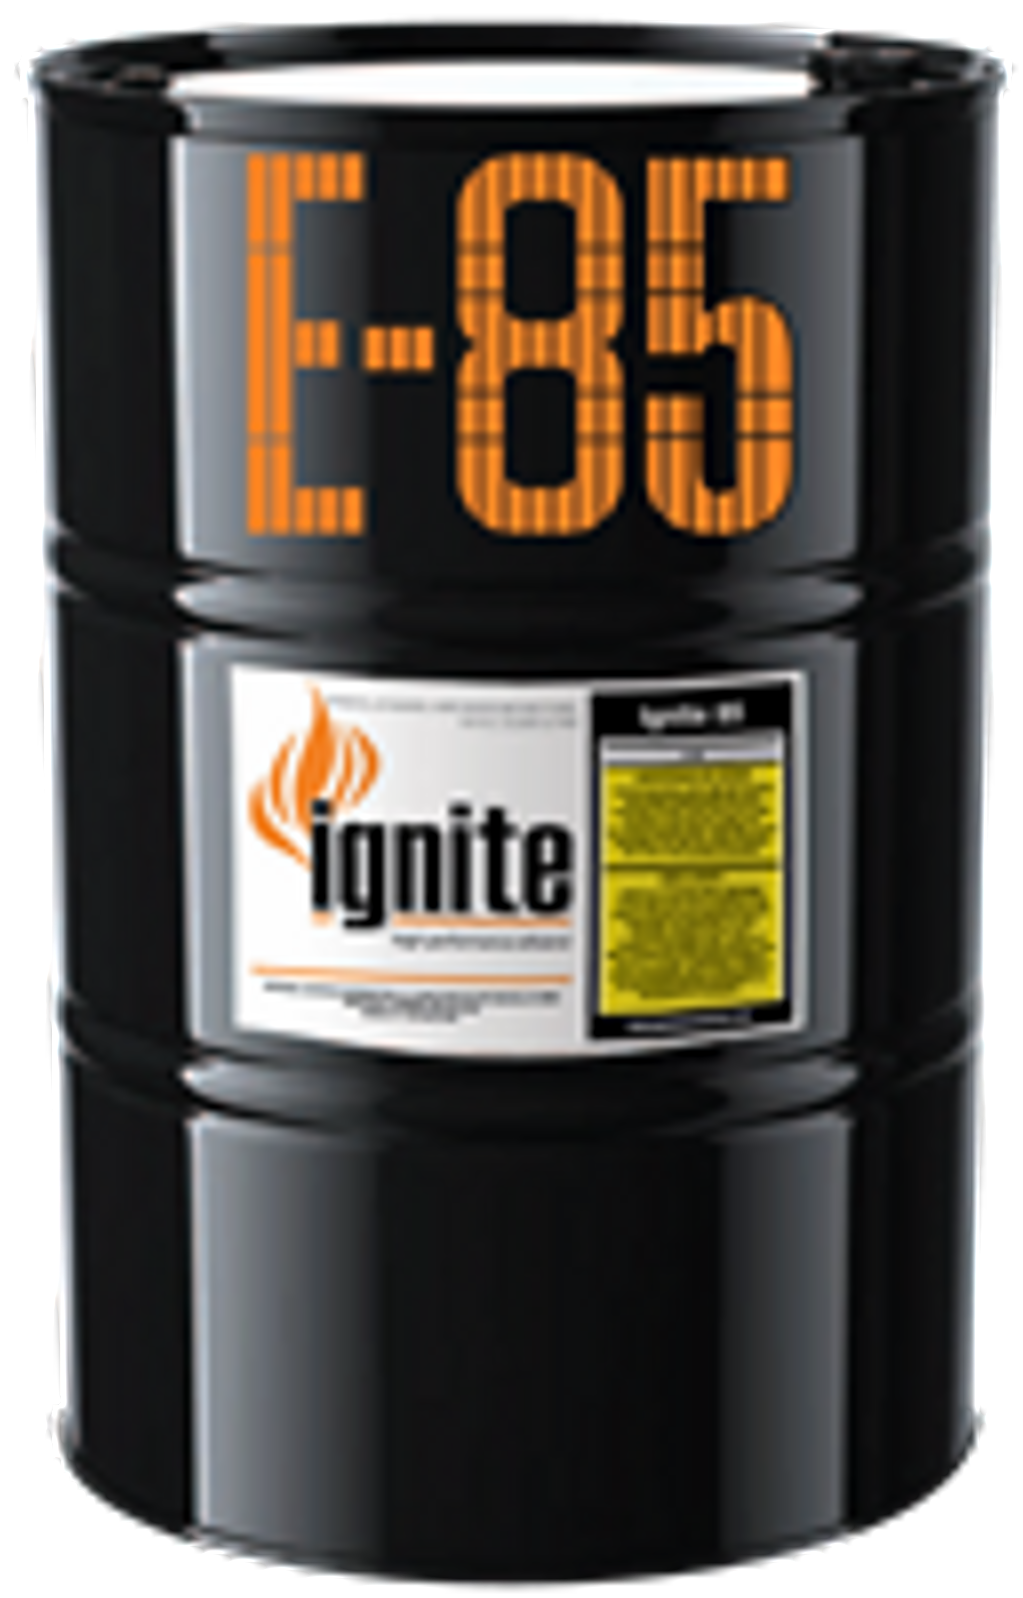 Ignite Orange E85 - 55 Gallon Drum of Ignite Racing Fuel